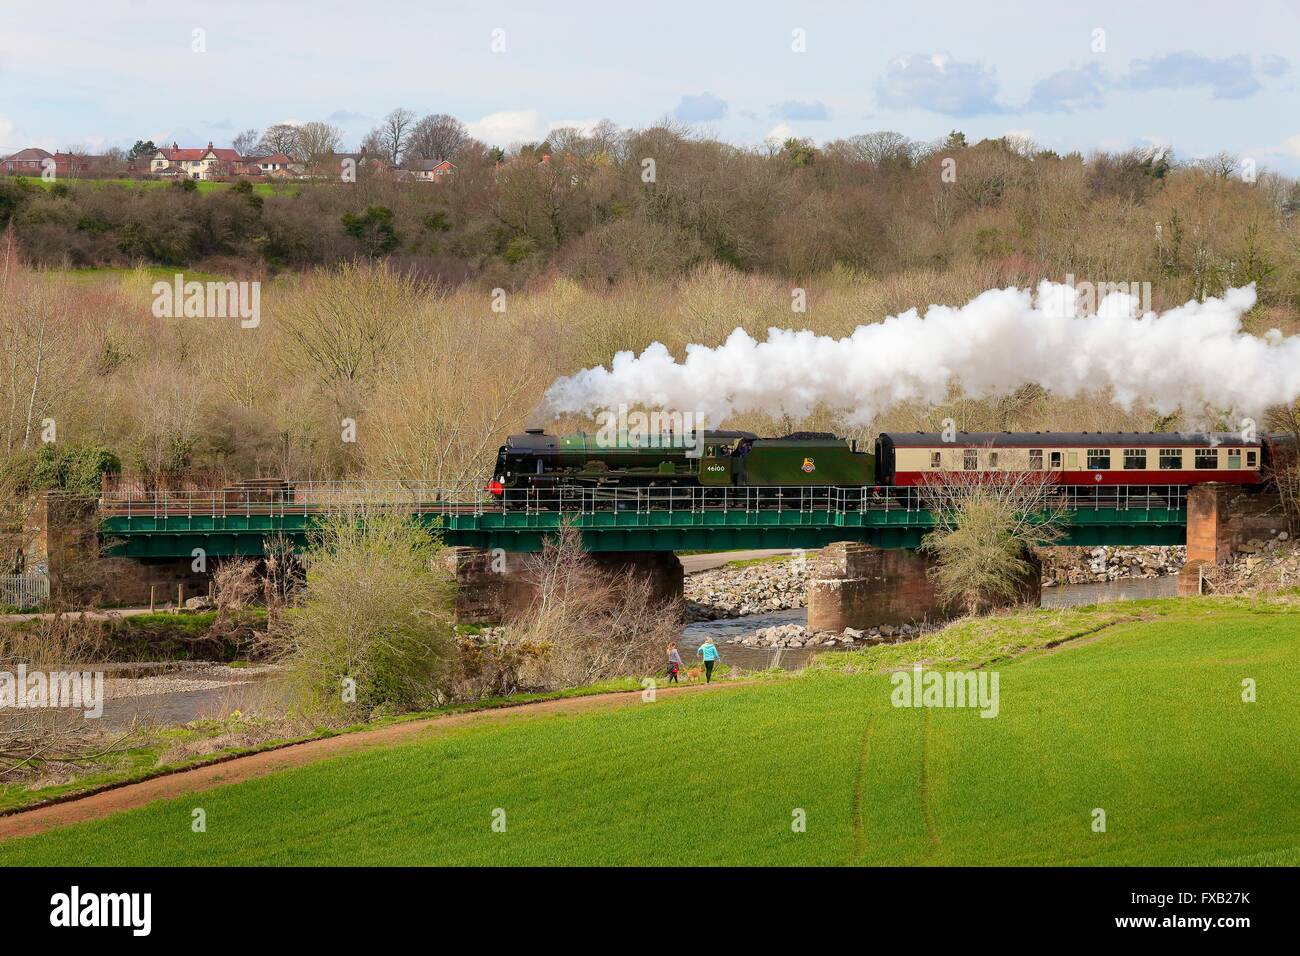 LMS train à vapeur Royal Scot Classe 7P 4-6-0 46100 Royal Scot. Cummersdale Cummersdale, Viaduc, Carlisle, Cumbria, England, UK. Banque D'Images